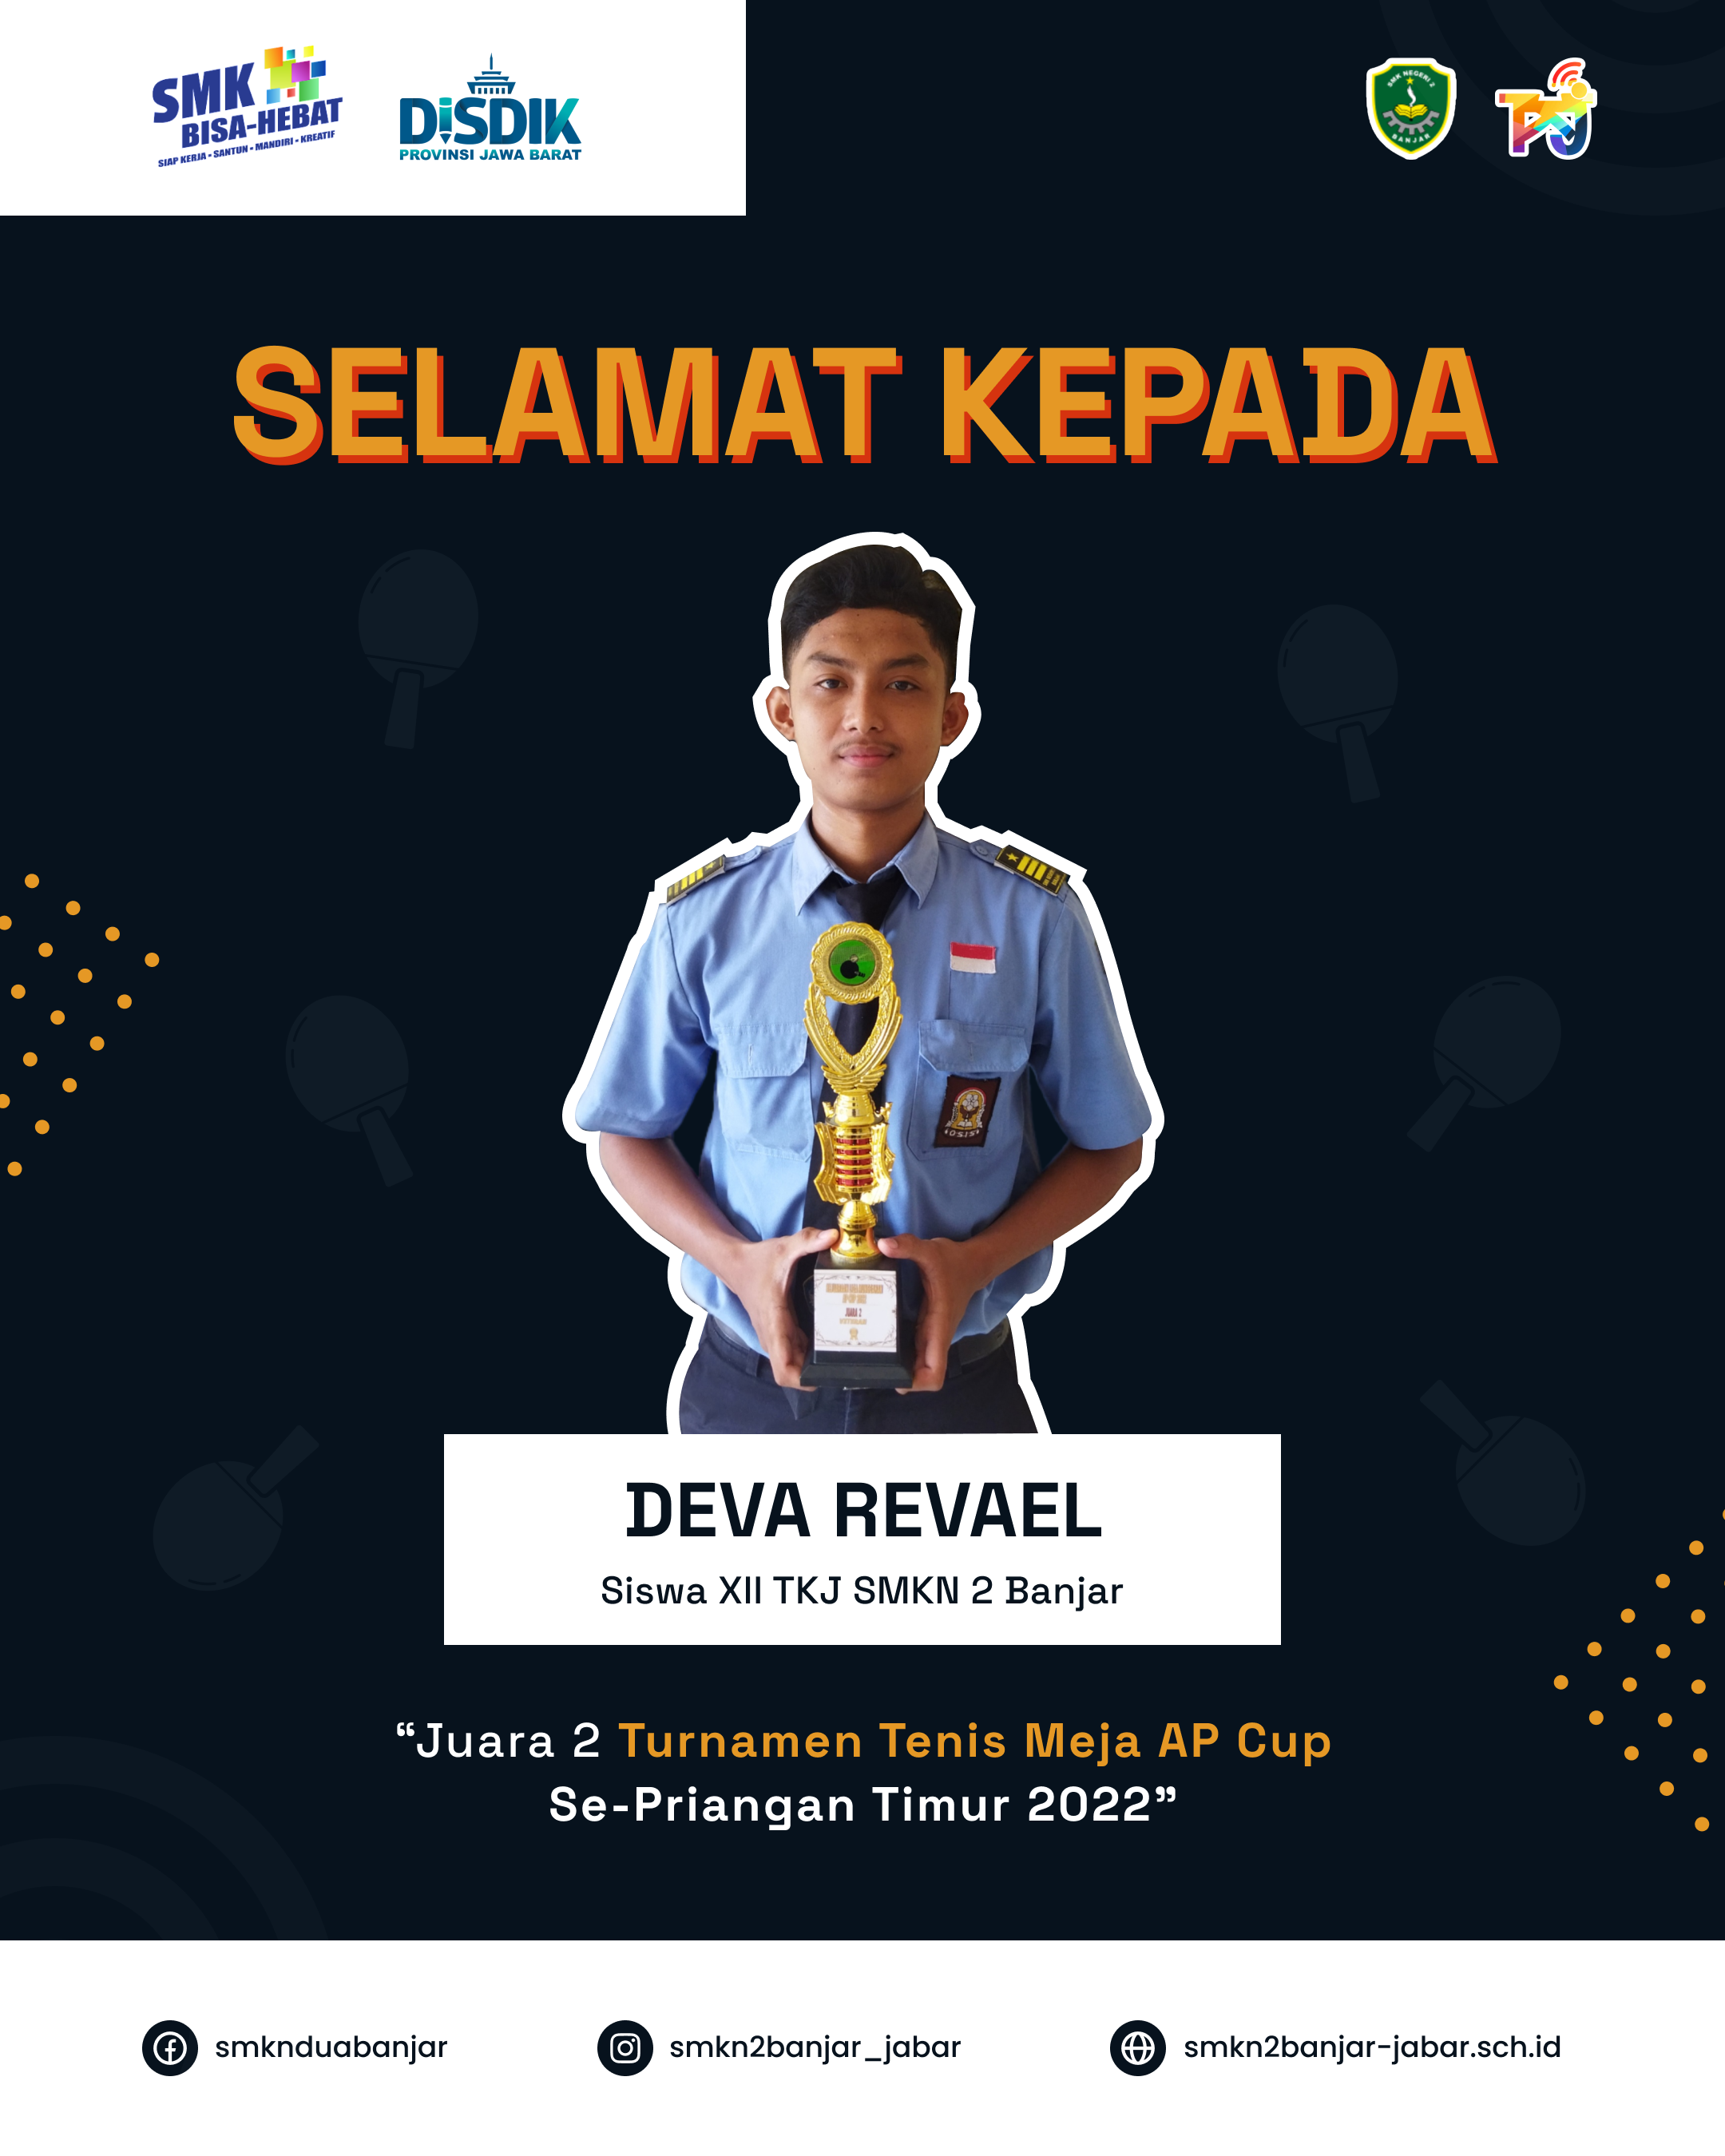 SMKN 2 Banjar Raih Juara 2 Turnamen Tenis Meja AP Cup se-Priangan Timur 2022